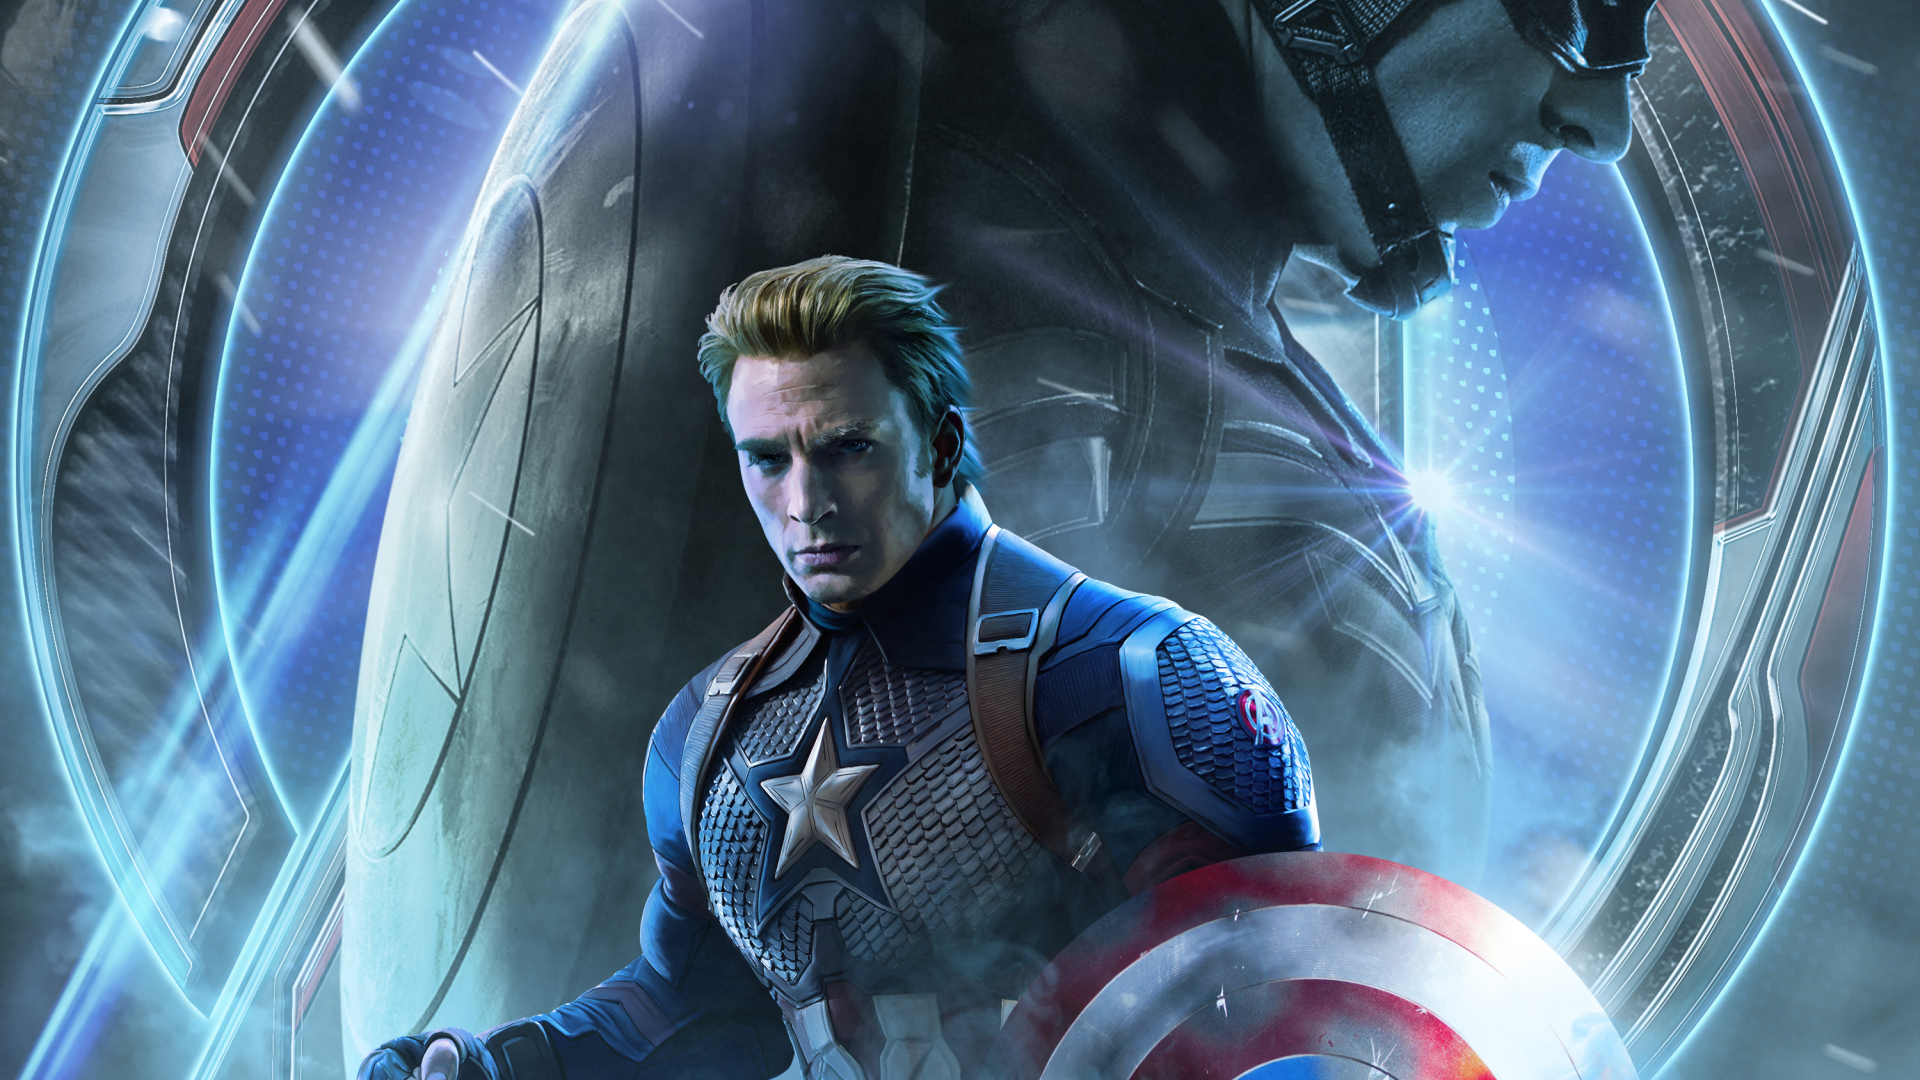 Avengers Endgame Captain America Poster Art 1080P